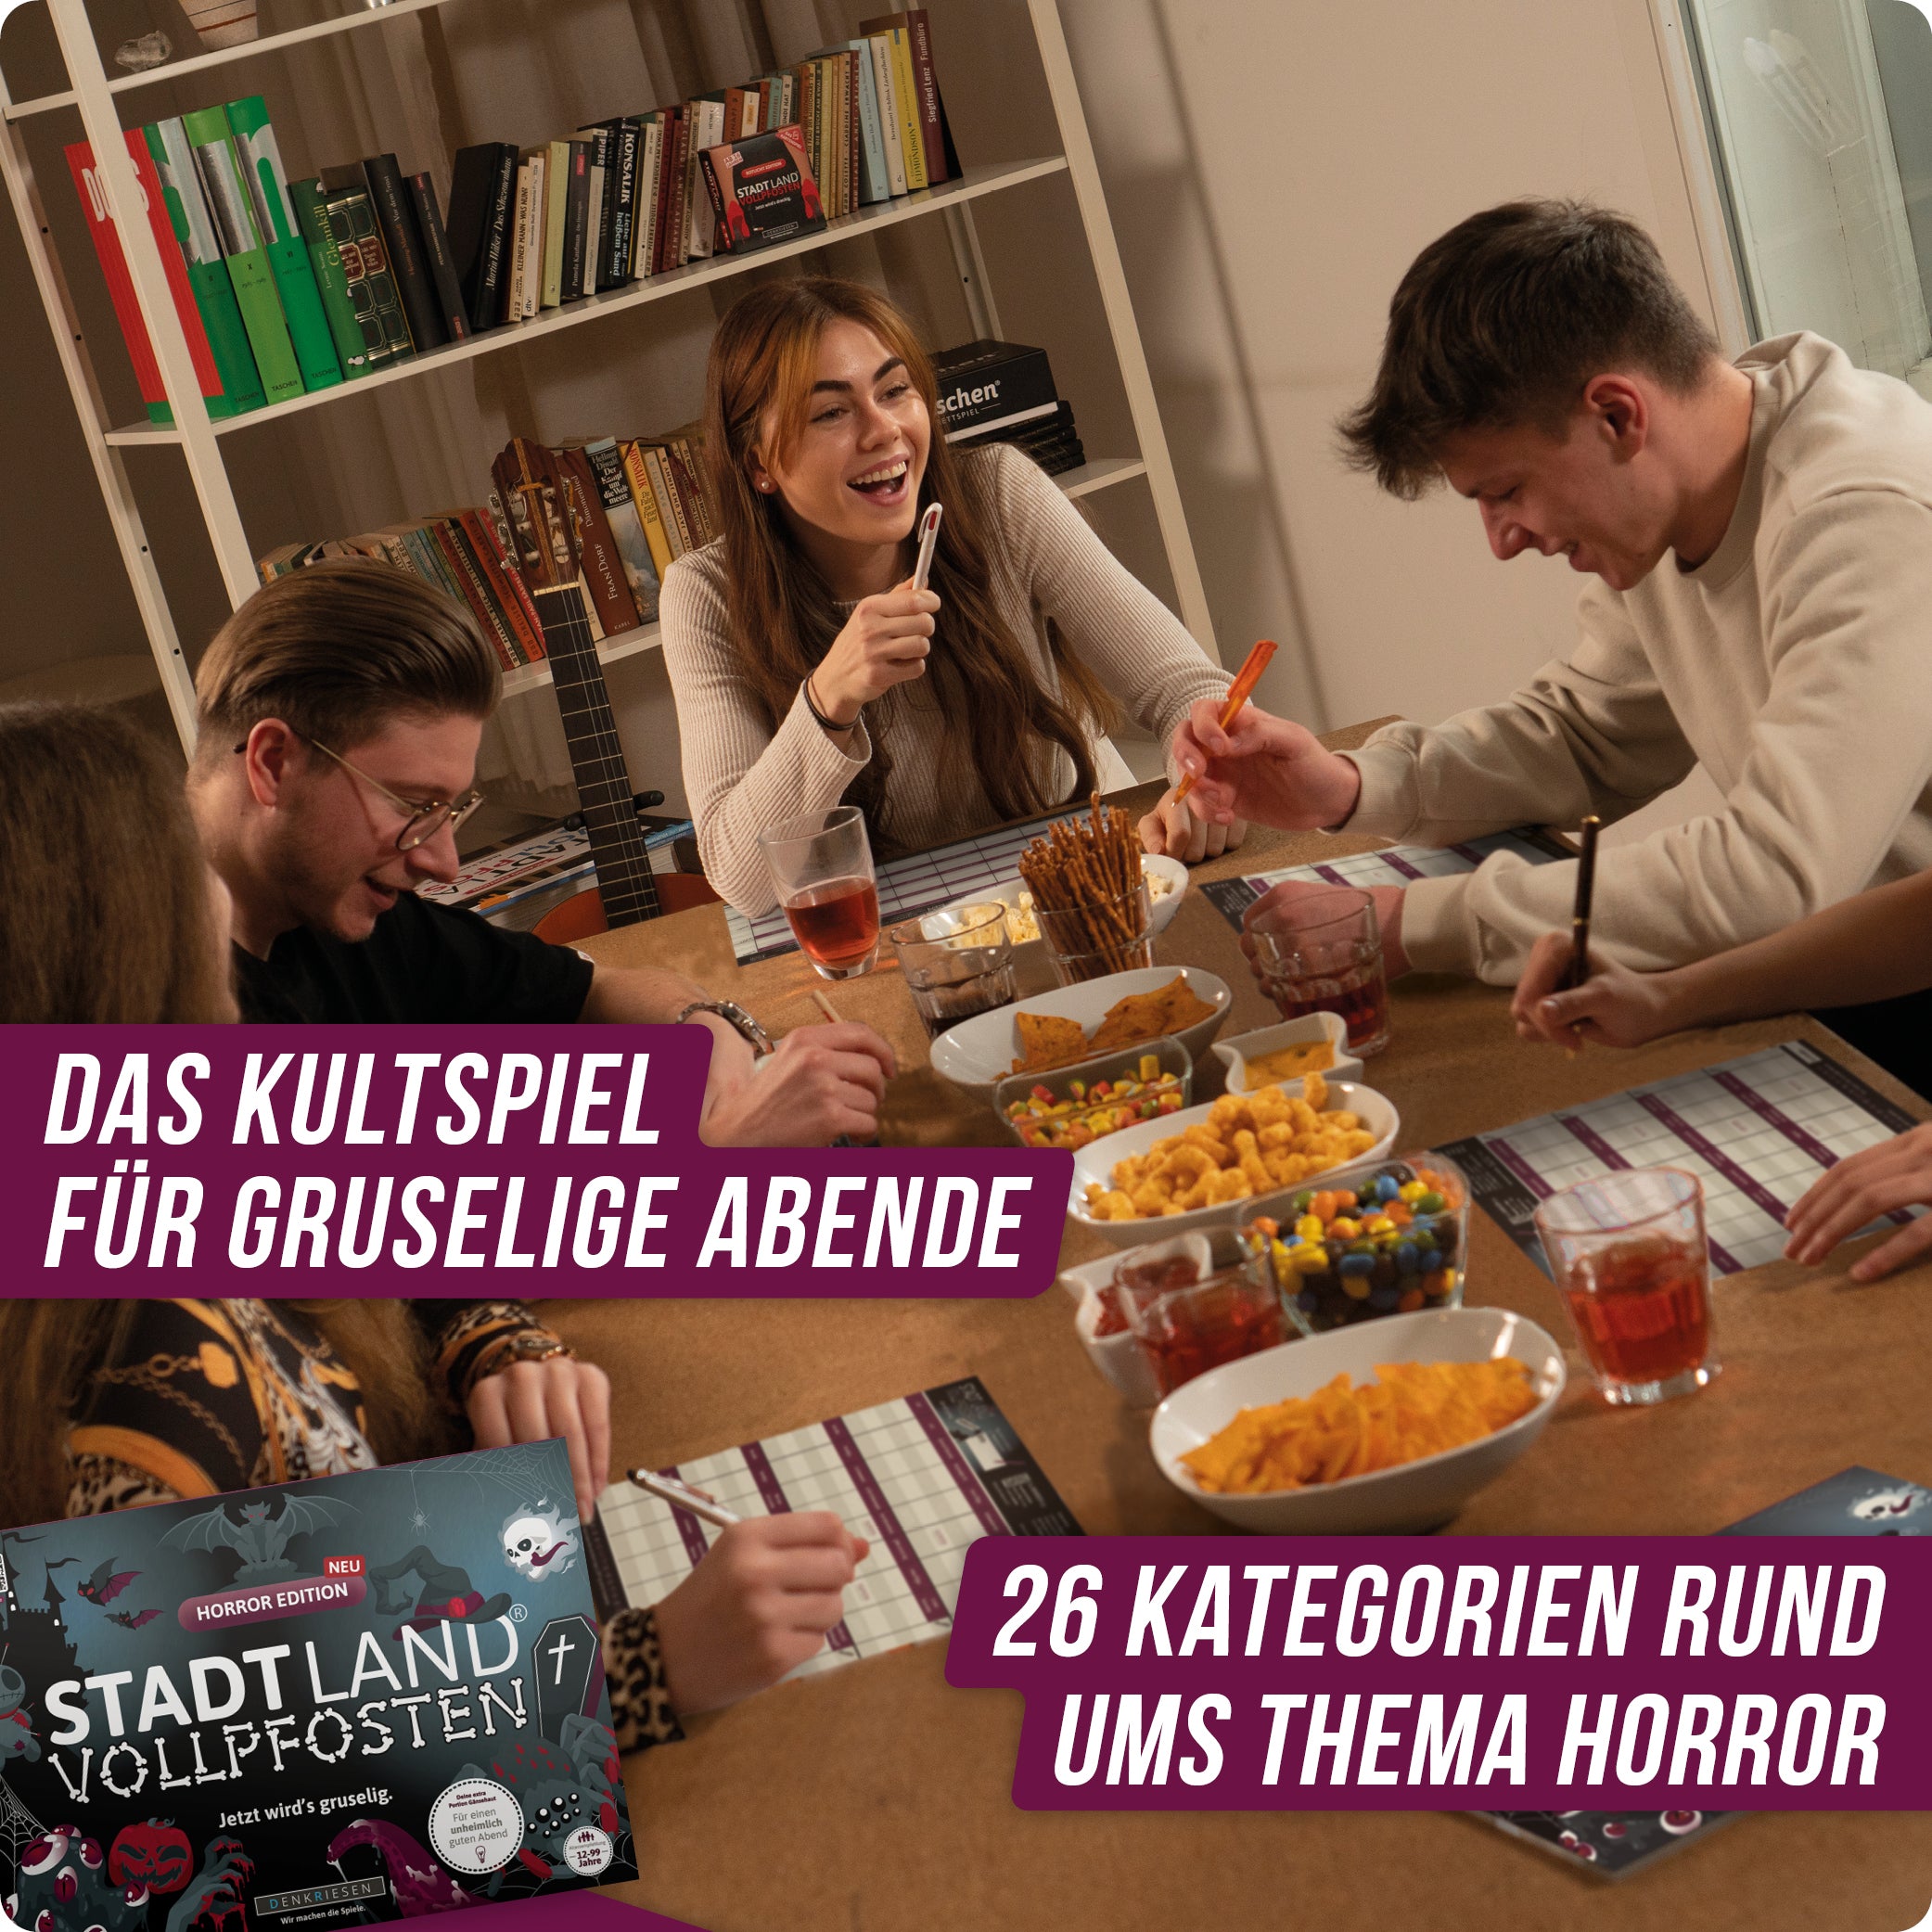 Stadt Land Vollpfosten® Horror Edition – "Jetzt wird's gruselig." | A4 Spielblock